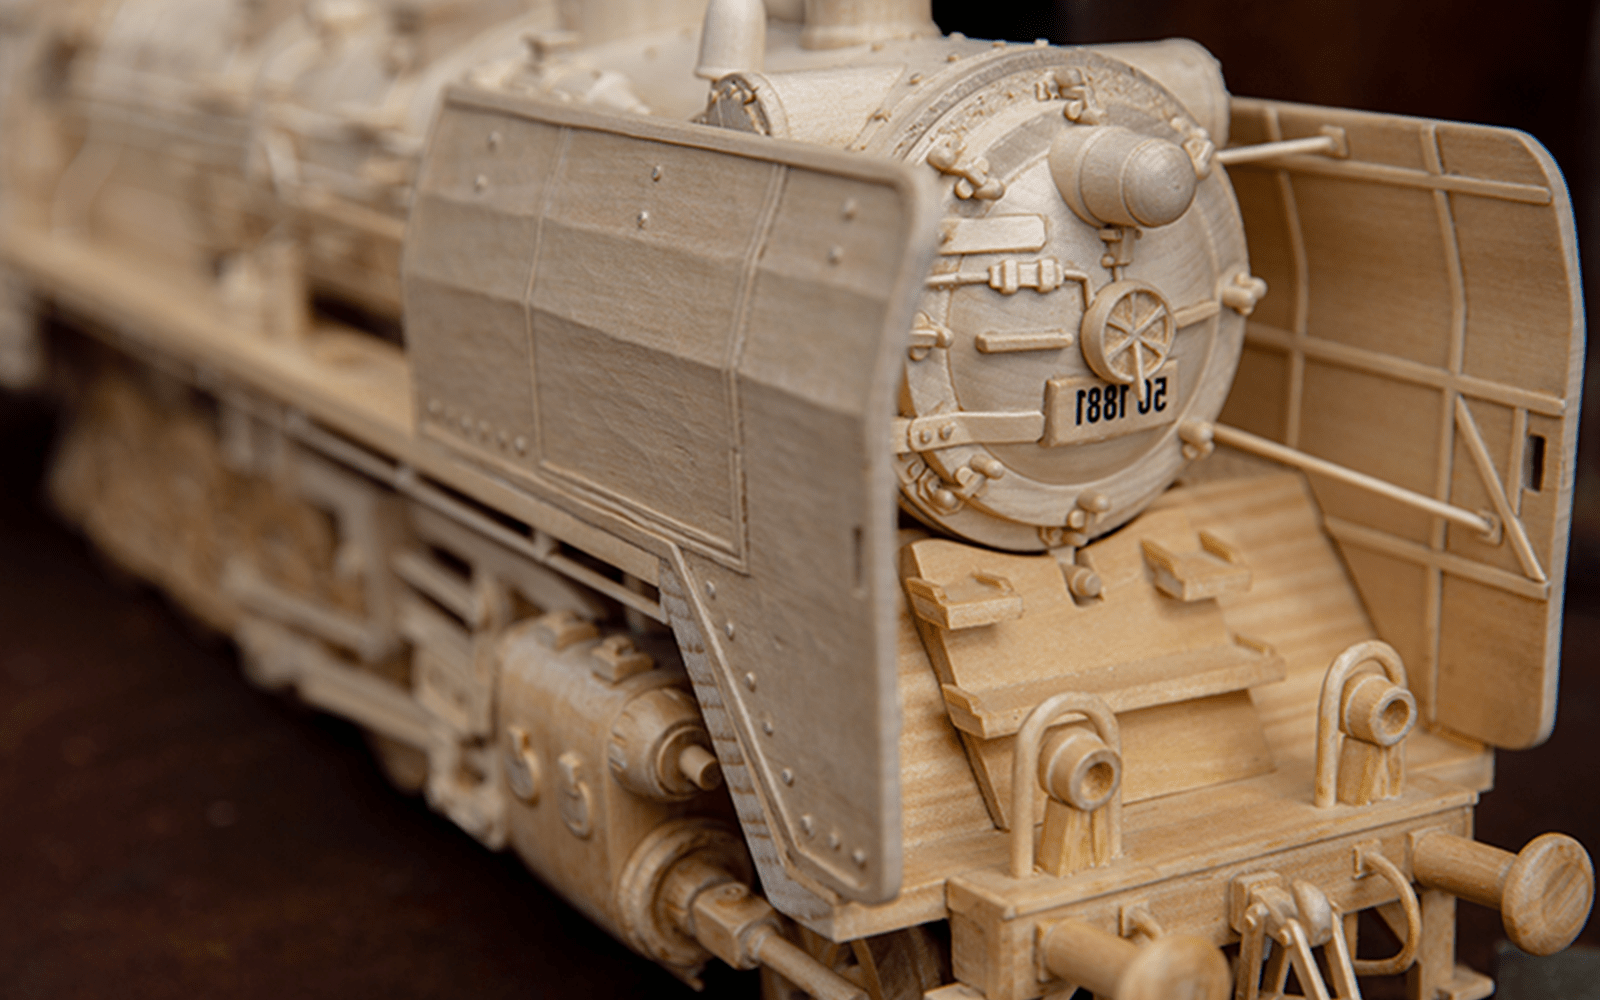 detailiert gearbeitete Eisenbahnlock aus Holz / hochwertige Holzmodelle und Miniaturen